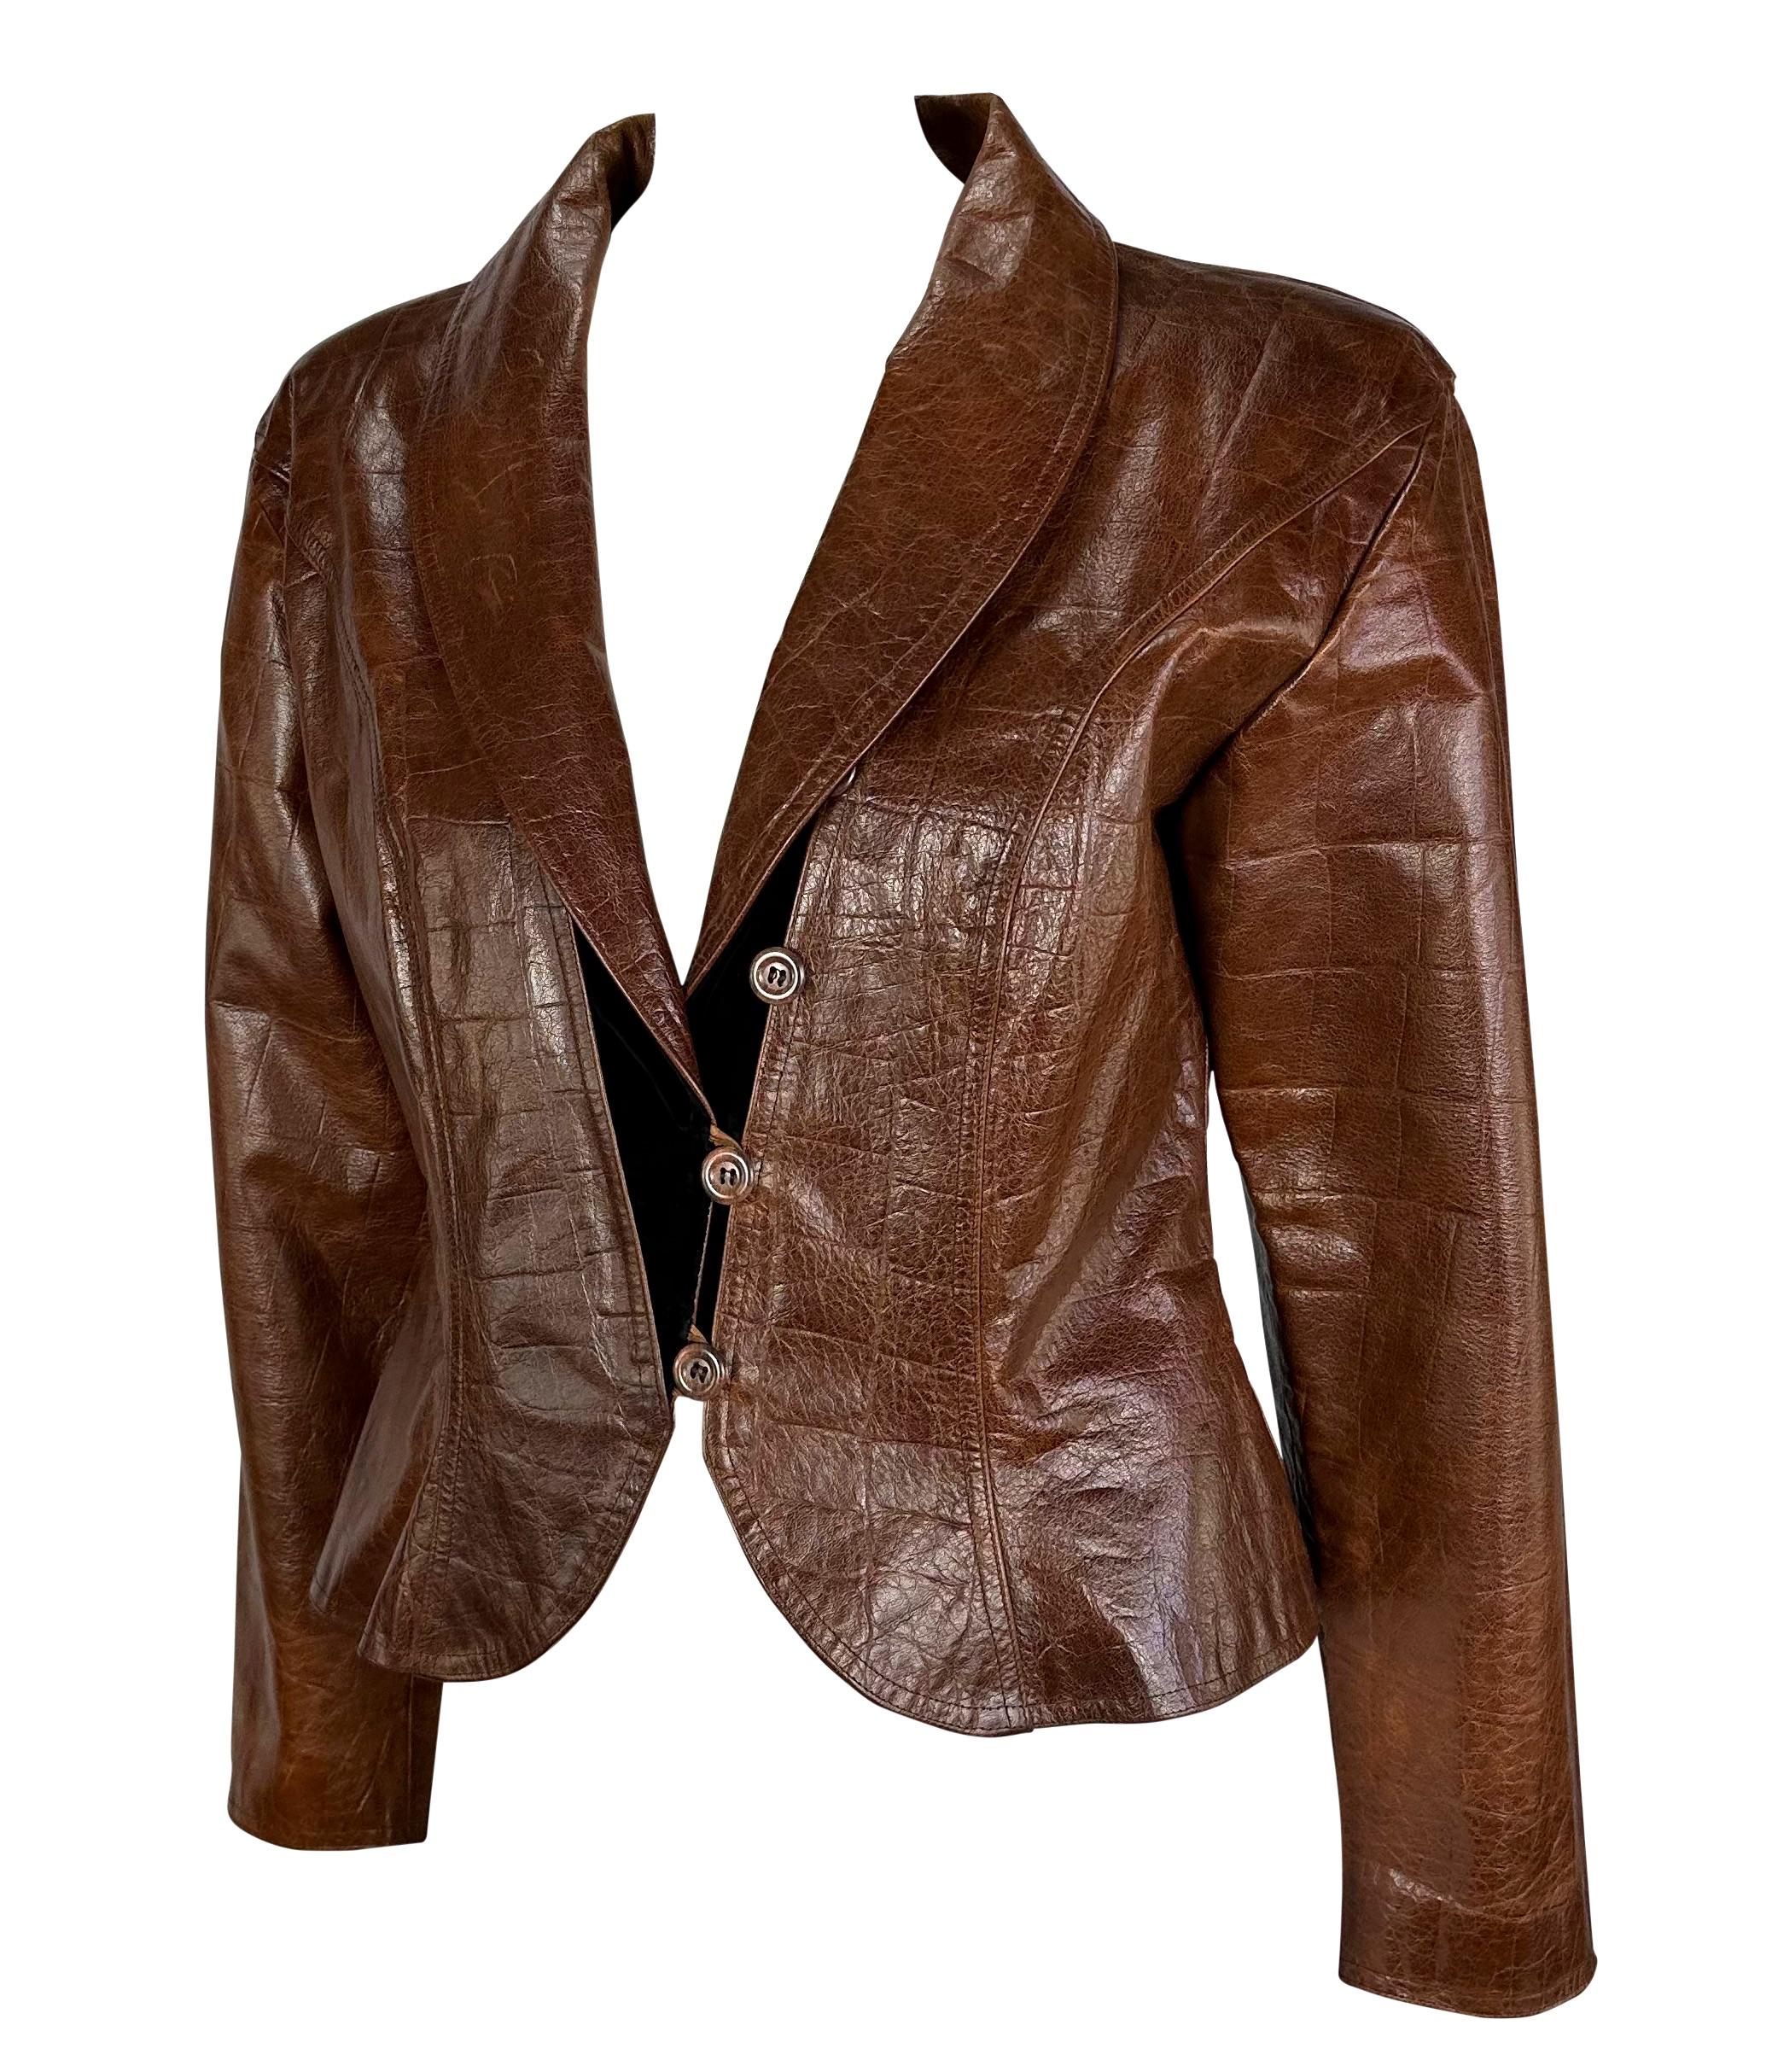 Wir präsentieren eine fabelhafte braune Lederjacke mit Krokodilprägung von Emanuel Ungaro. Diese fabelhafte Jacke aus den 1980er Jahren zeichnet sich durch einen Schößchensaum, schwarze Samtdetails und ein Schalkrevers aus. Ergänzen Sie Ihre